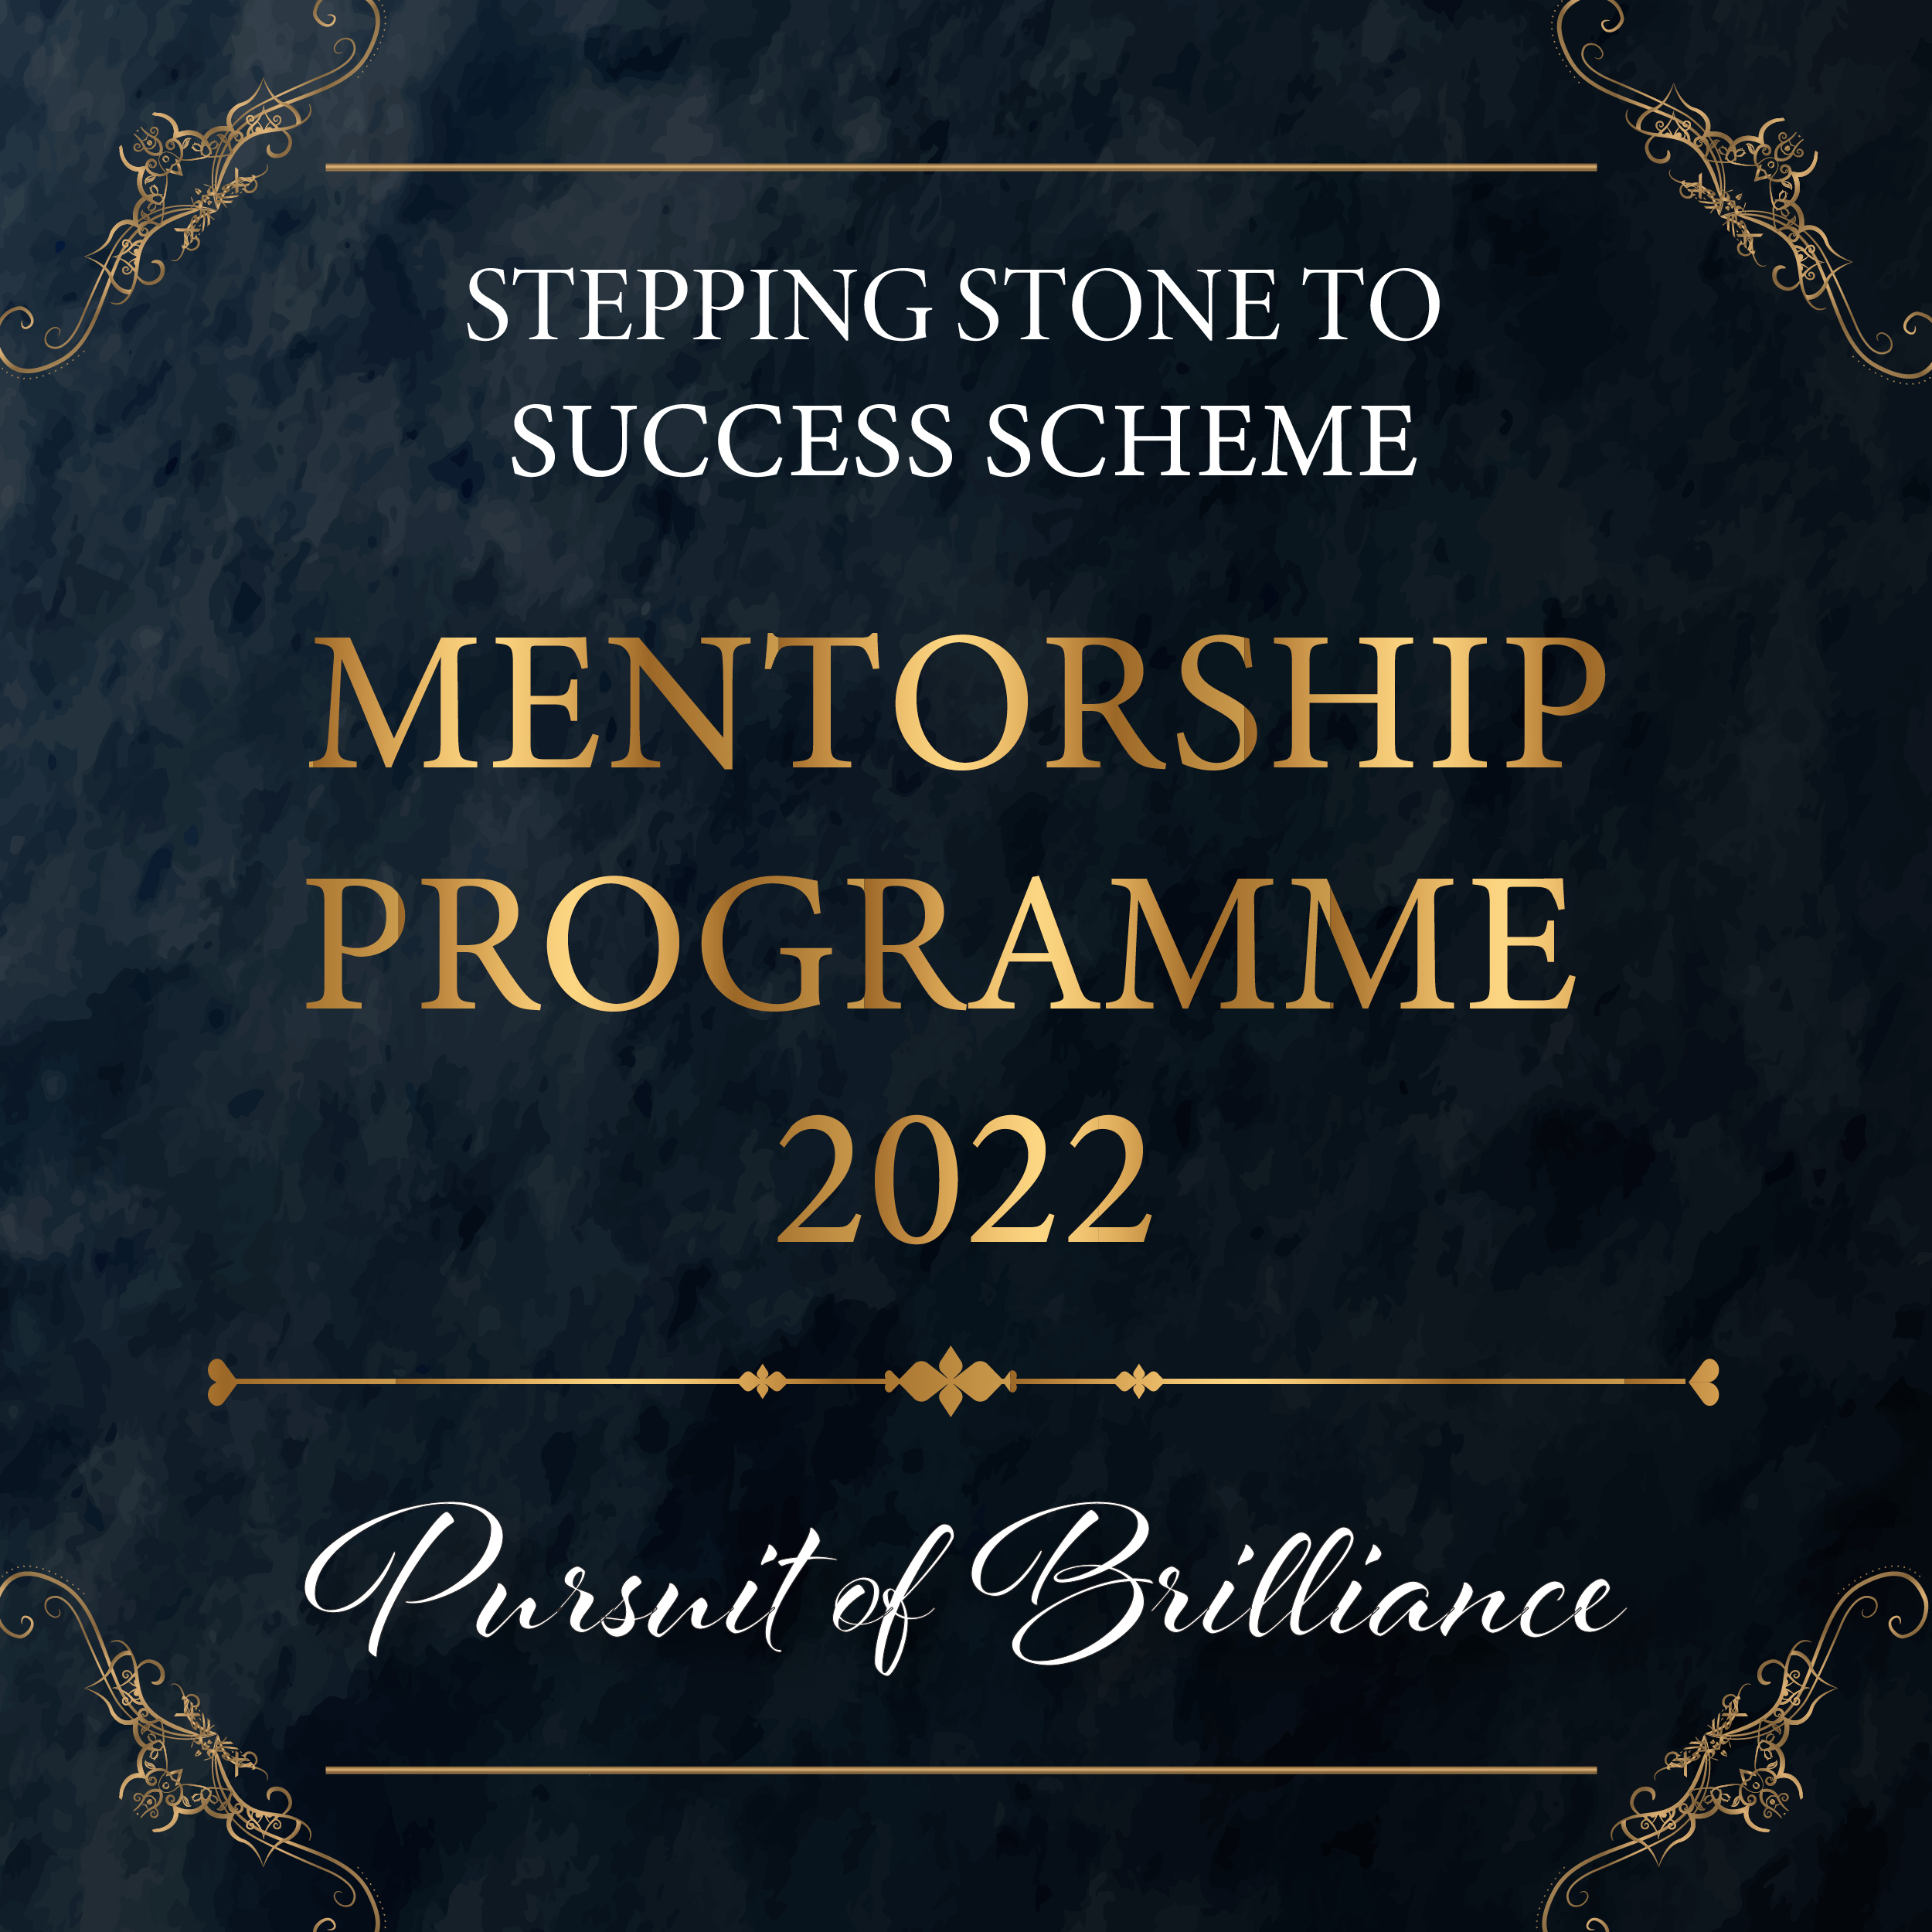 Mentorship Programme 2022